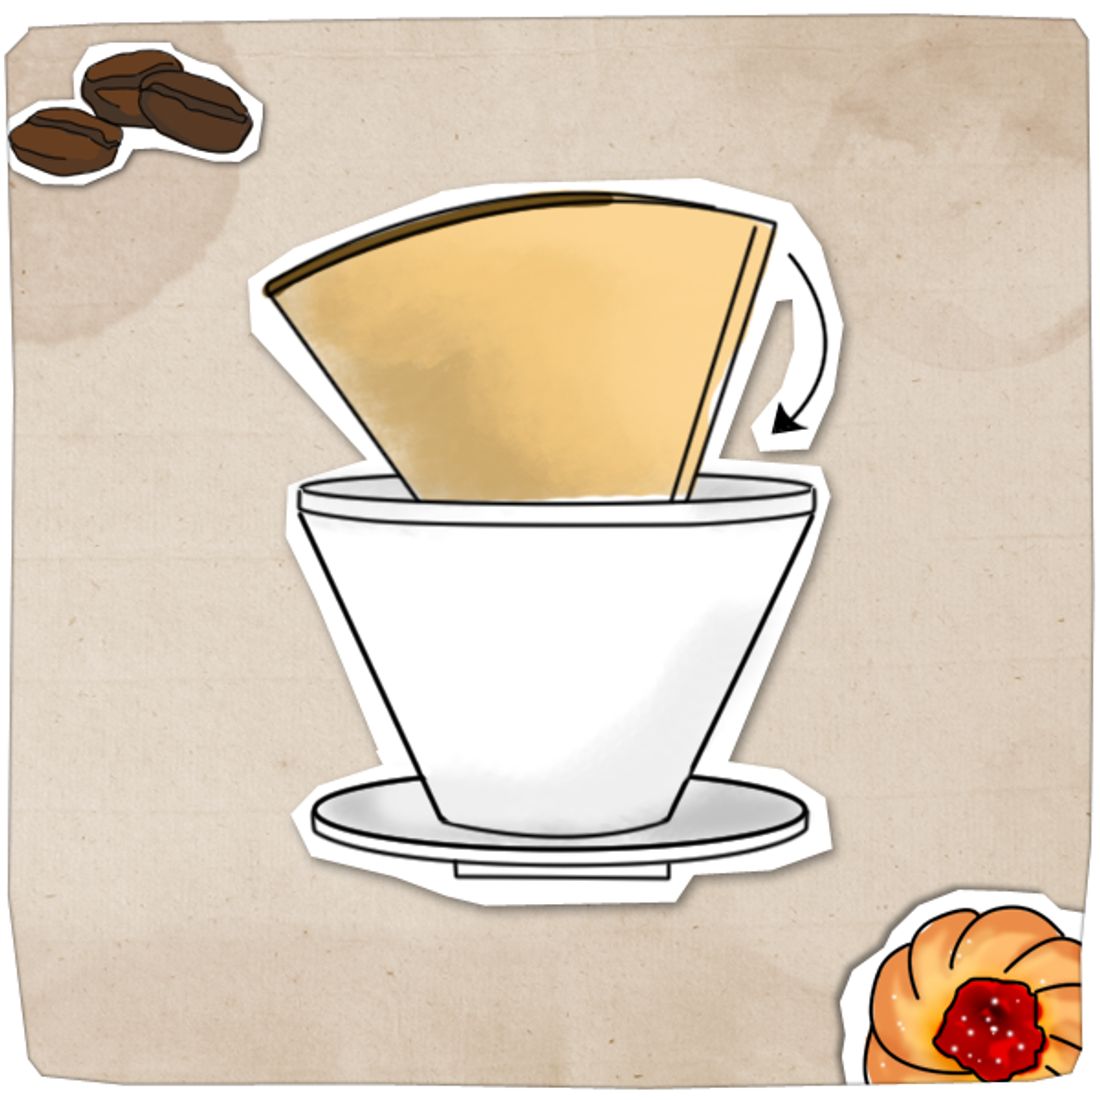 Filterkaffee kochen - so geht's Schritt für Schritt - filtertuete_einlegen